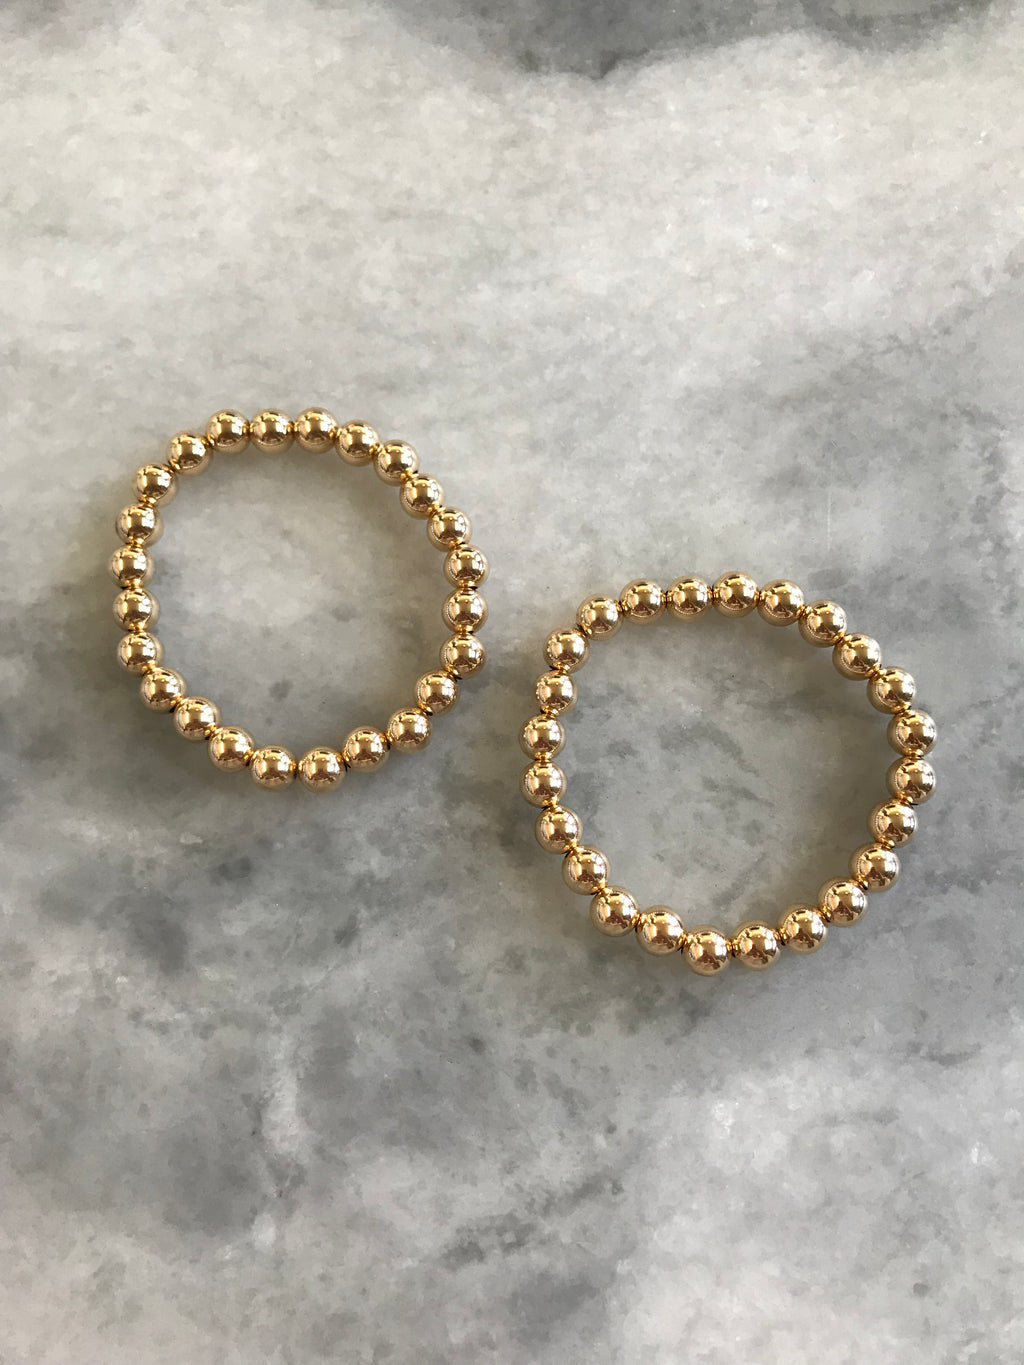 14 Karat Gold Beaded Bracelet - 6 millimeter